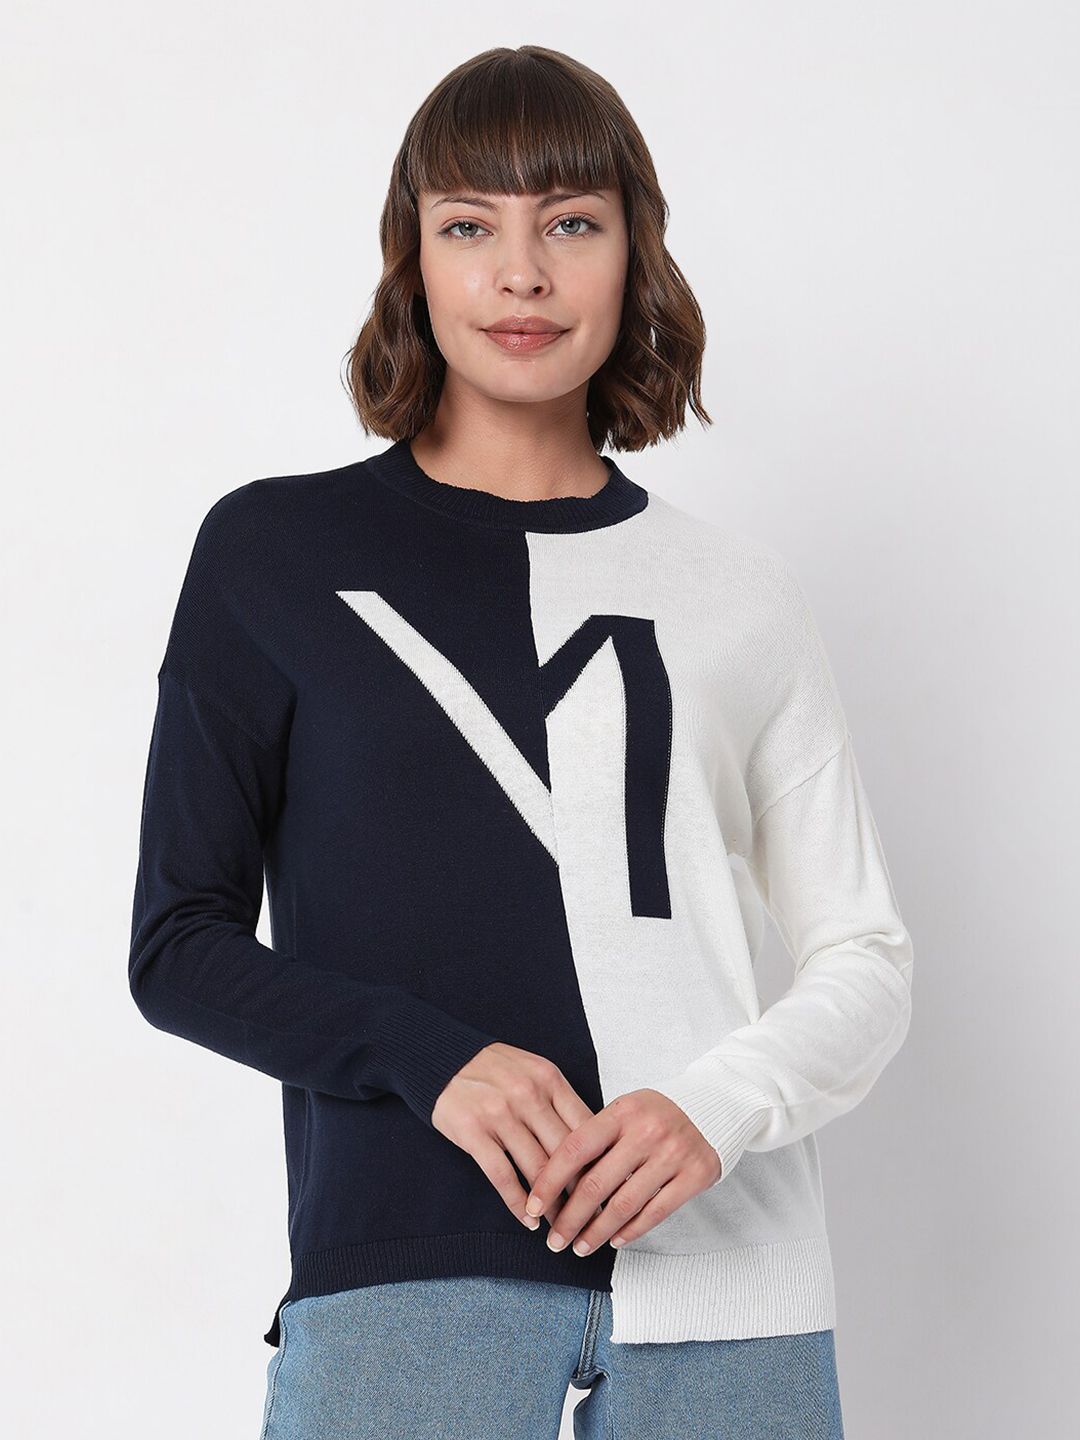 Vero Moda Women White & Black Colourblocked Sweater Price in India